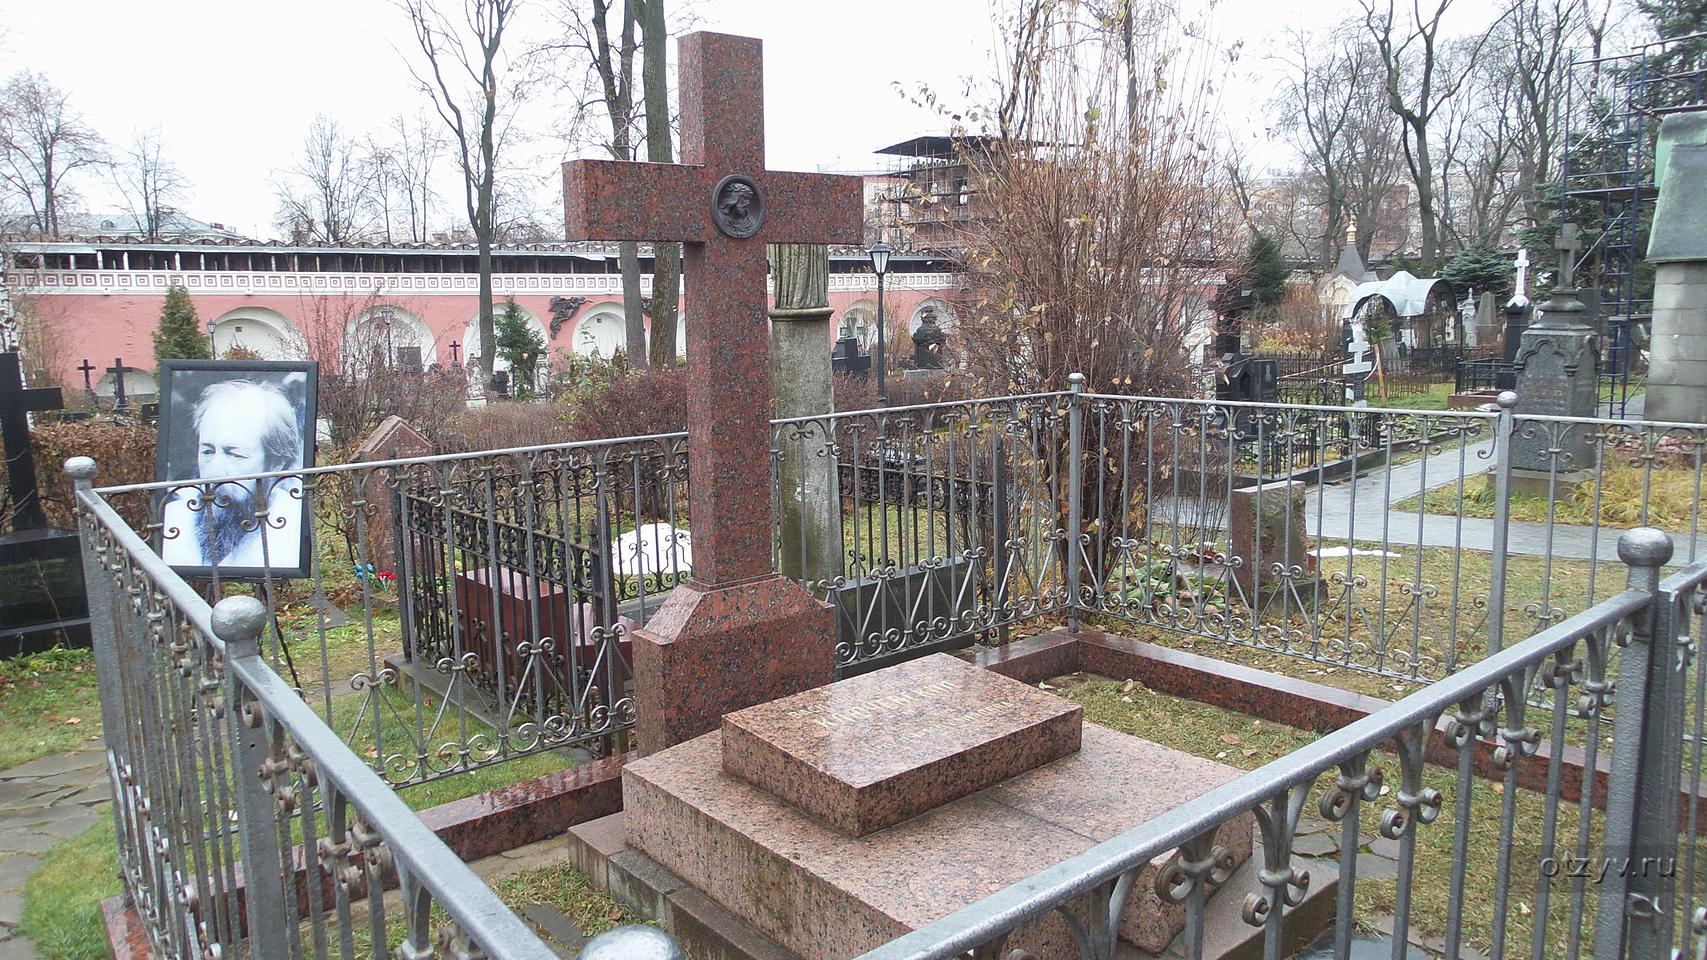 Могила дарьи салтыковой на донском кладбище фото